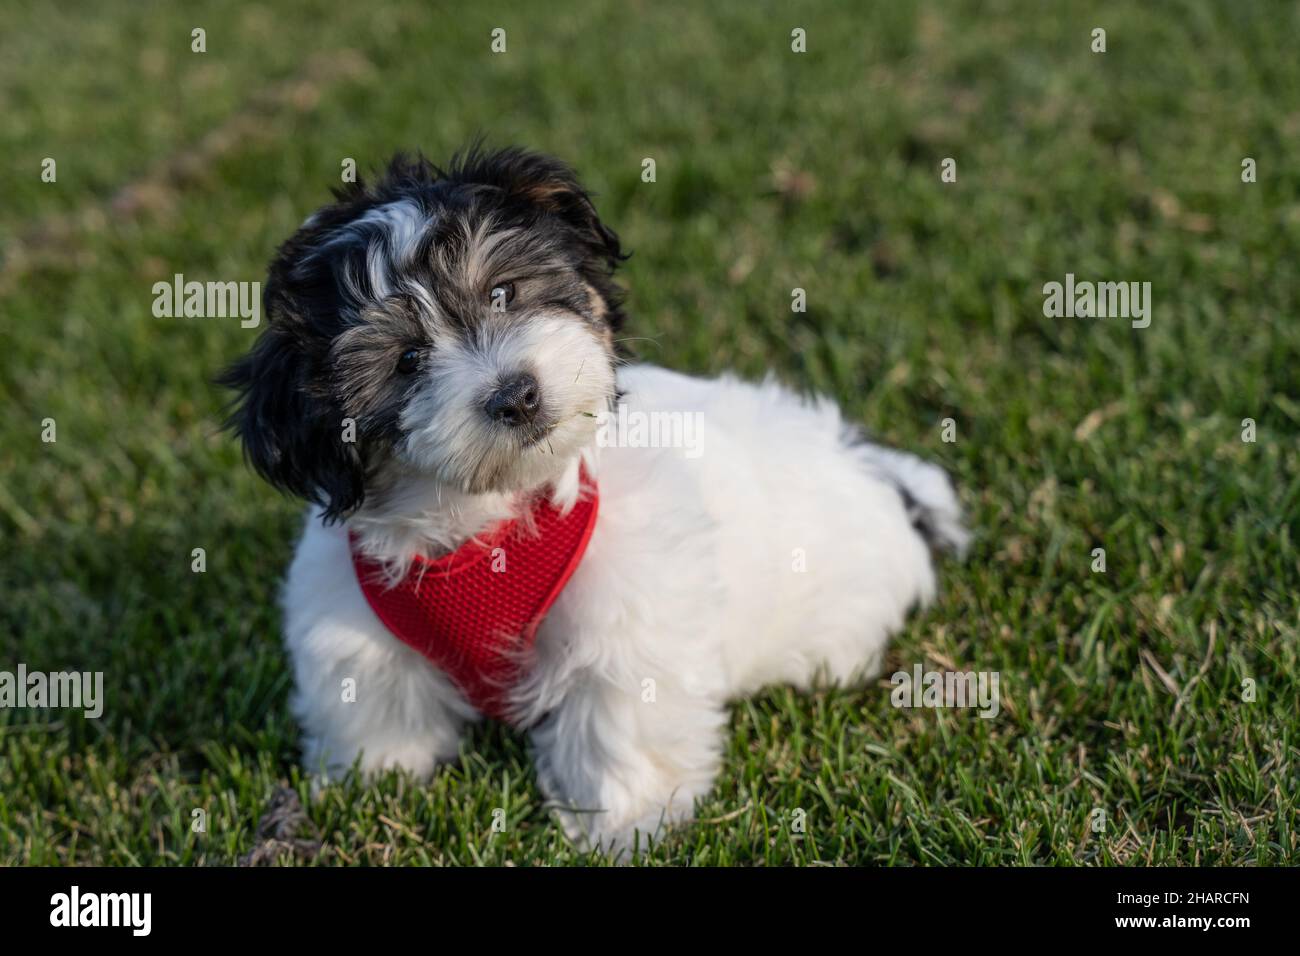 Carino cucciolo nero e bianco di havanese che indossa l'imbracatura rossa si inclina la testa mentre guarda la macchina fotografica. Foto Stock